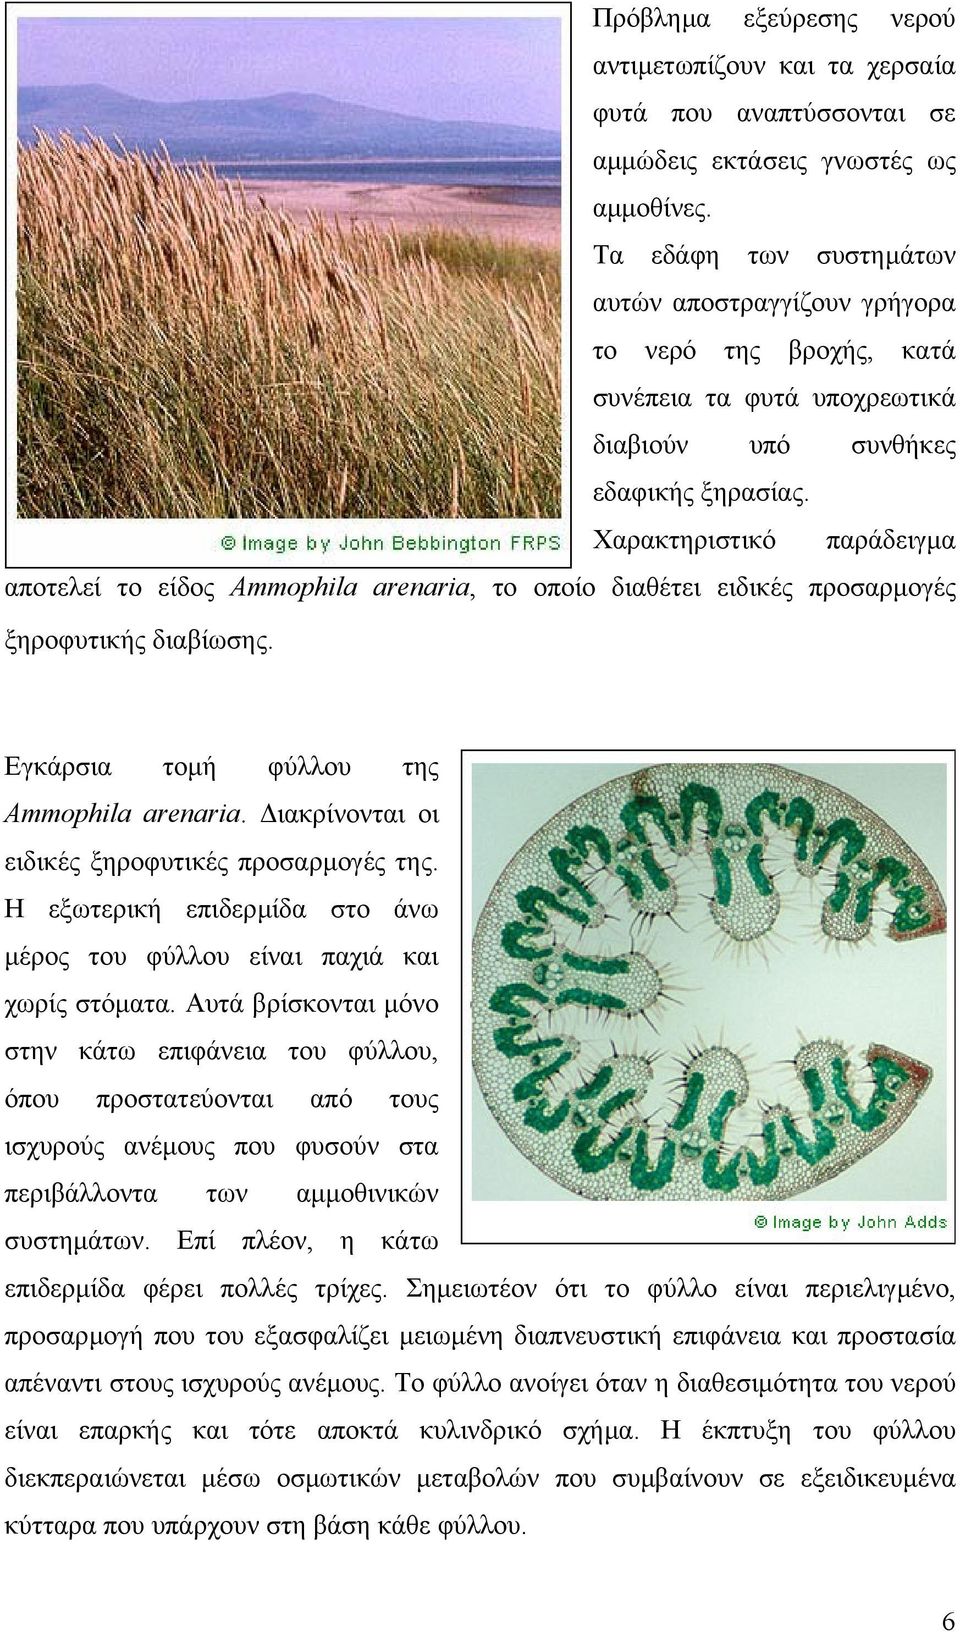 Χαρακτηριστικό παράδειγµα αποτελεί το είδος Ammophila arenaria, το οποίο διαθέτει ειδικές προσαρµογές ξηροφυτικής διαβίωσης. Εγκάρσια τοµή φύλλου της Ammophila arenaria.